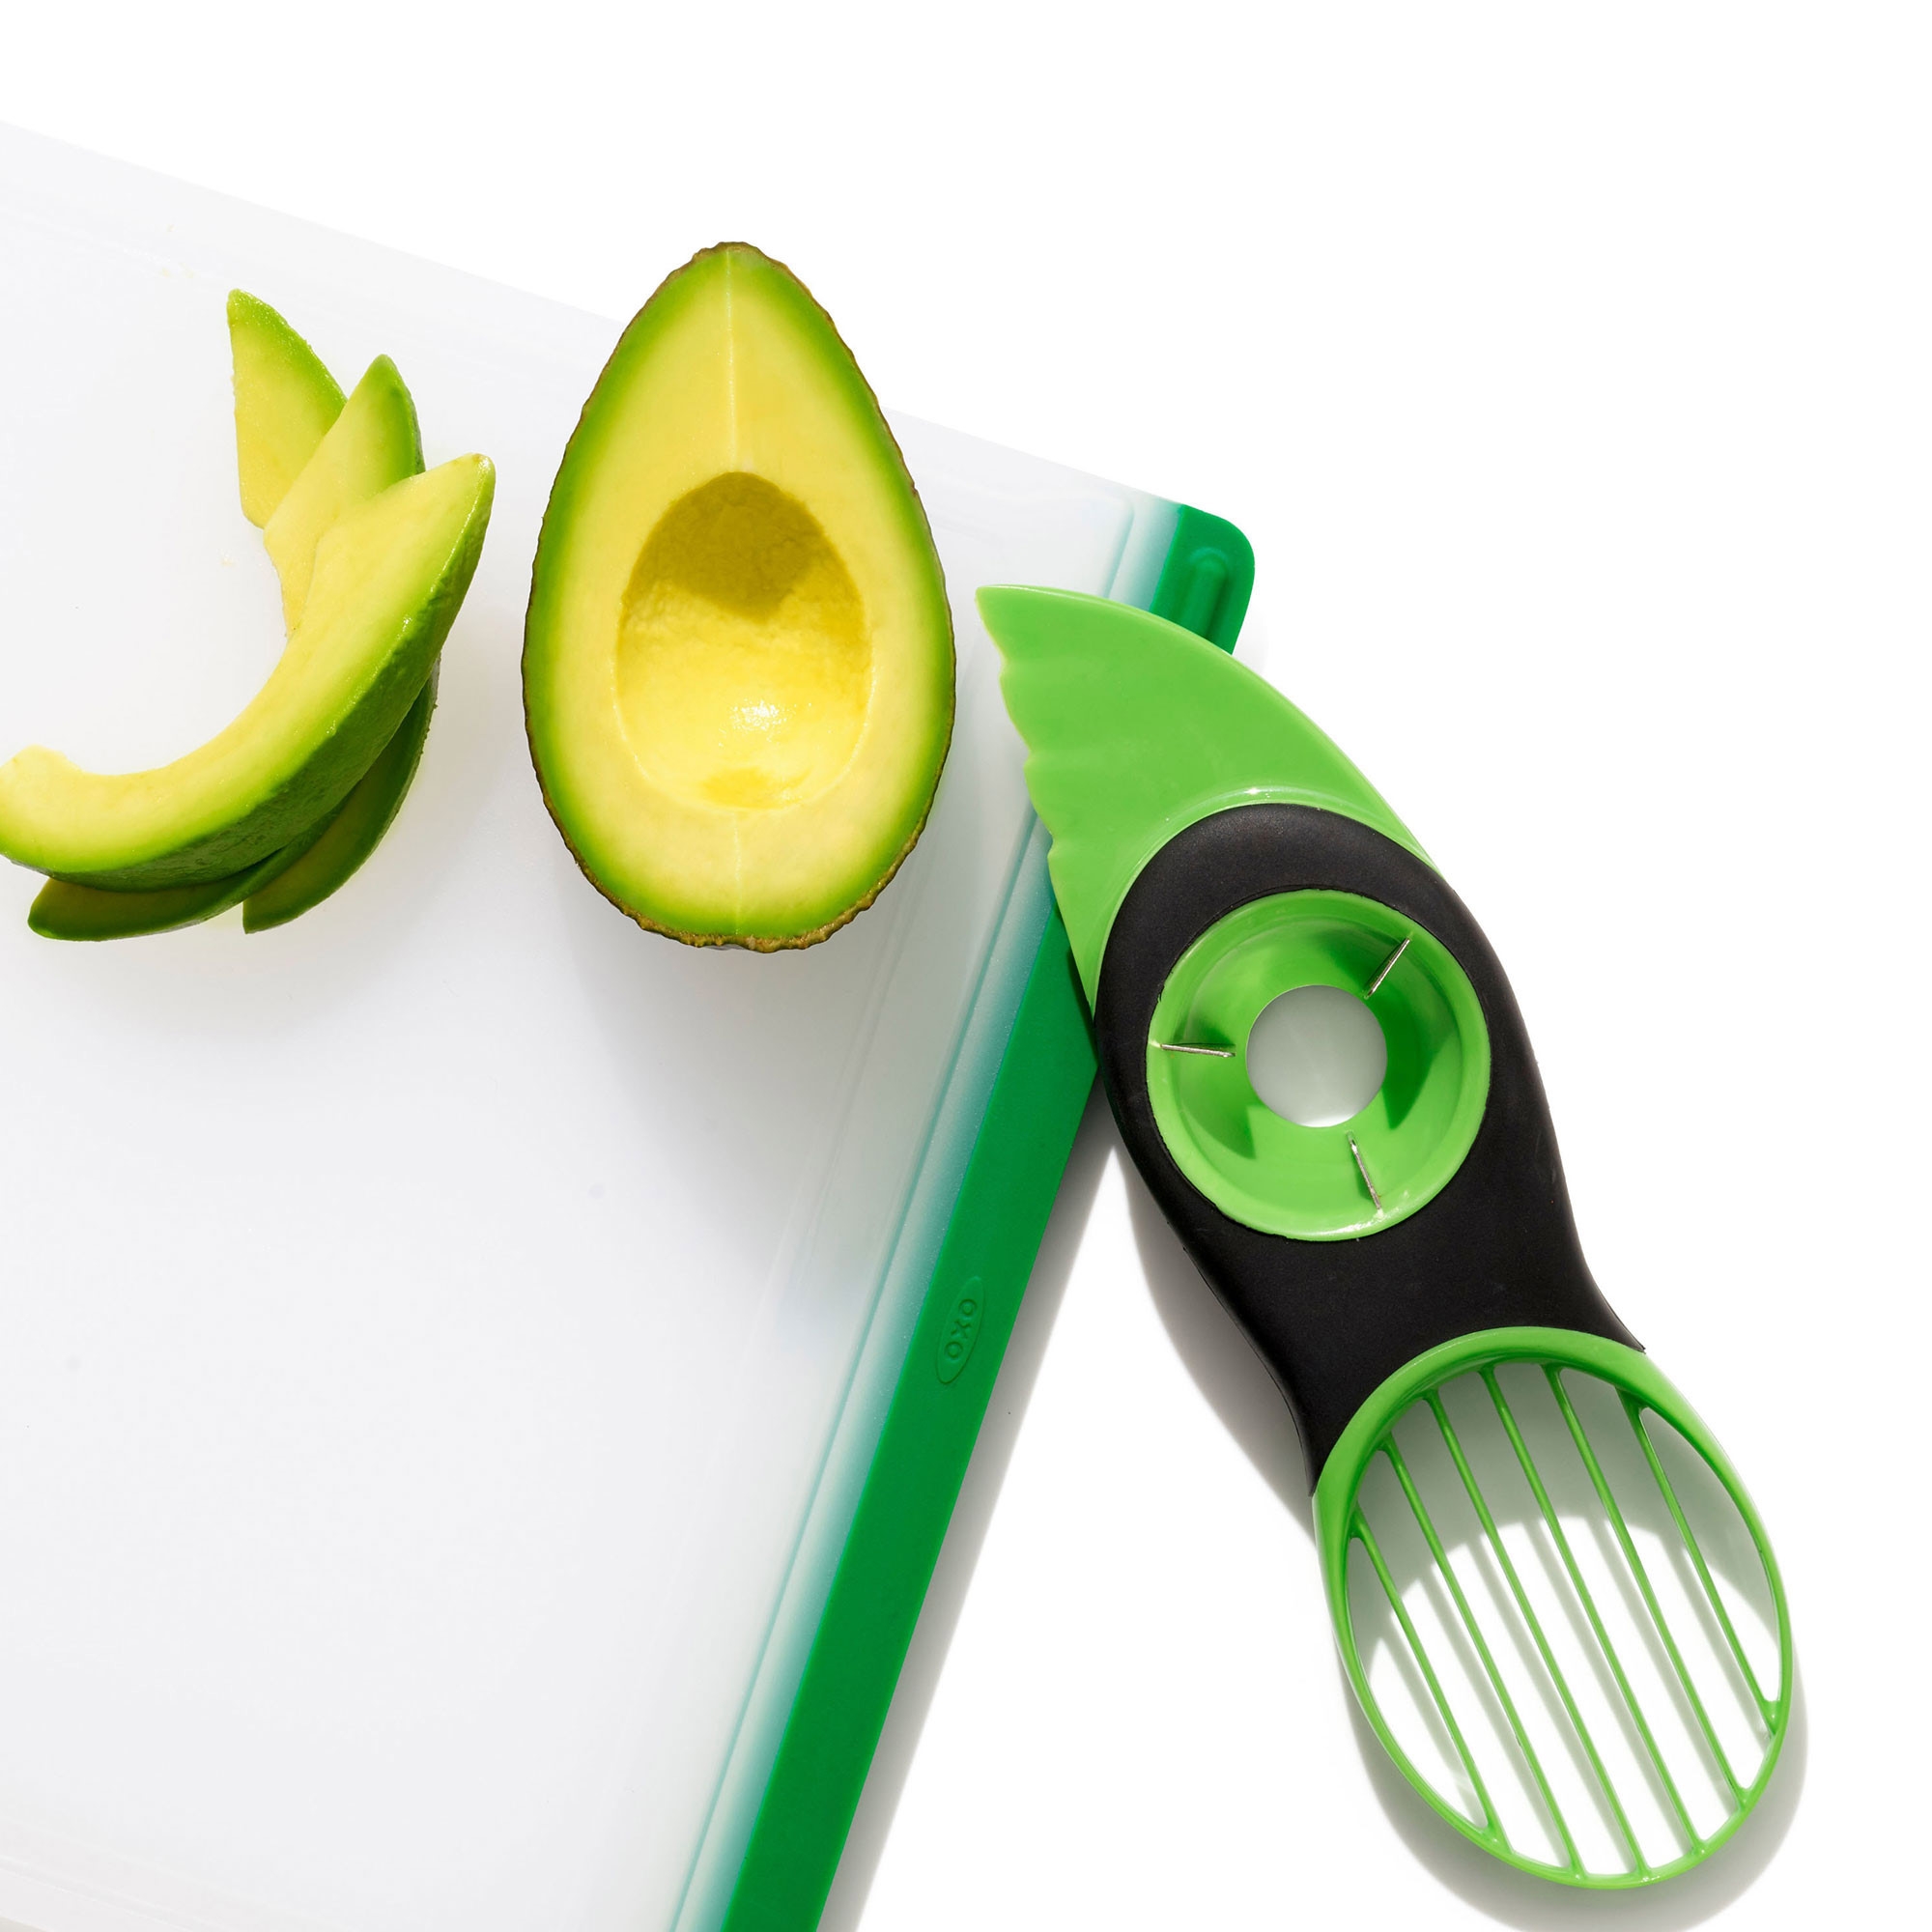 OXO Good Grips 3 in 1 Avocado Slicer Image 2